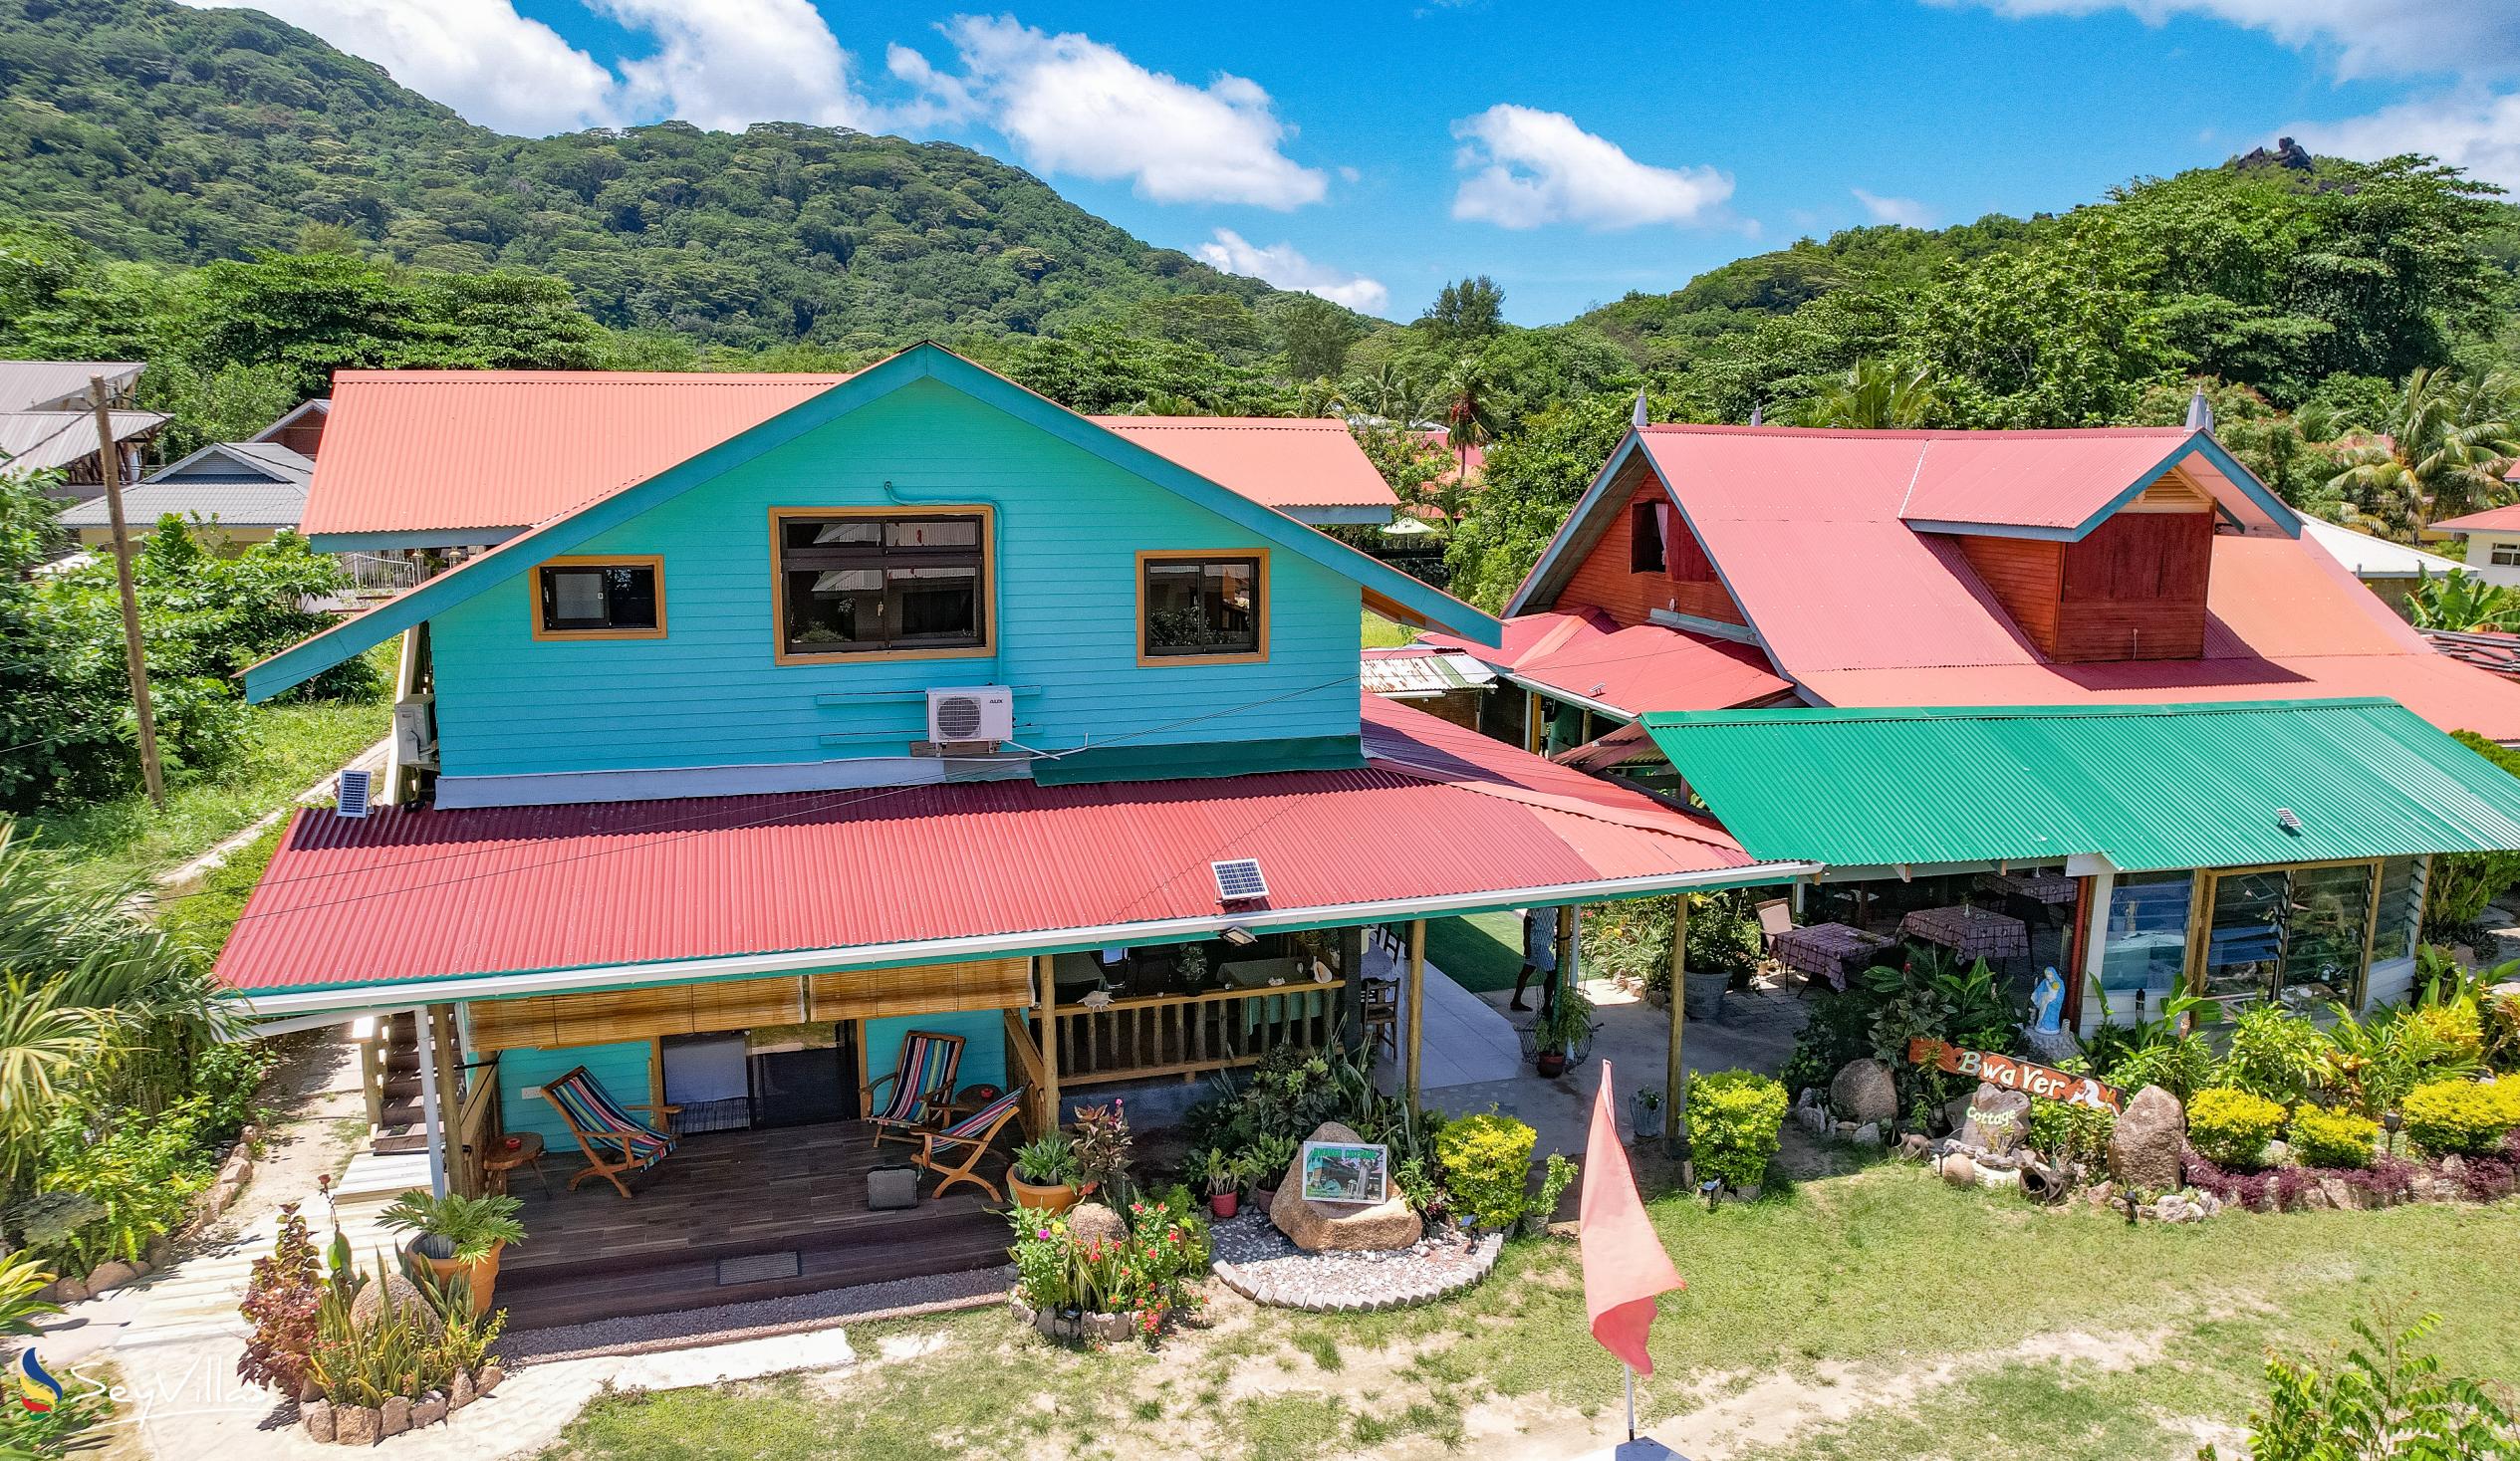 Photo 1: Bwaver Cottage - Outdoor area - La Digue (Seychelles)